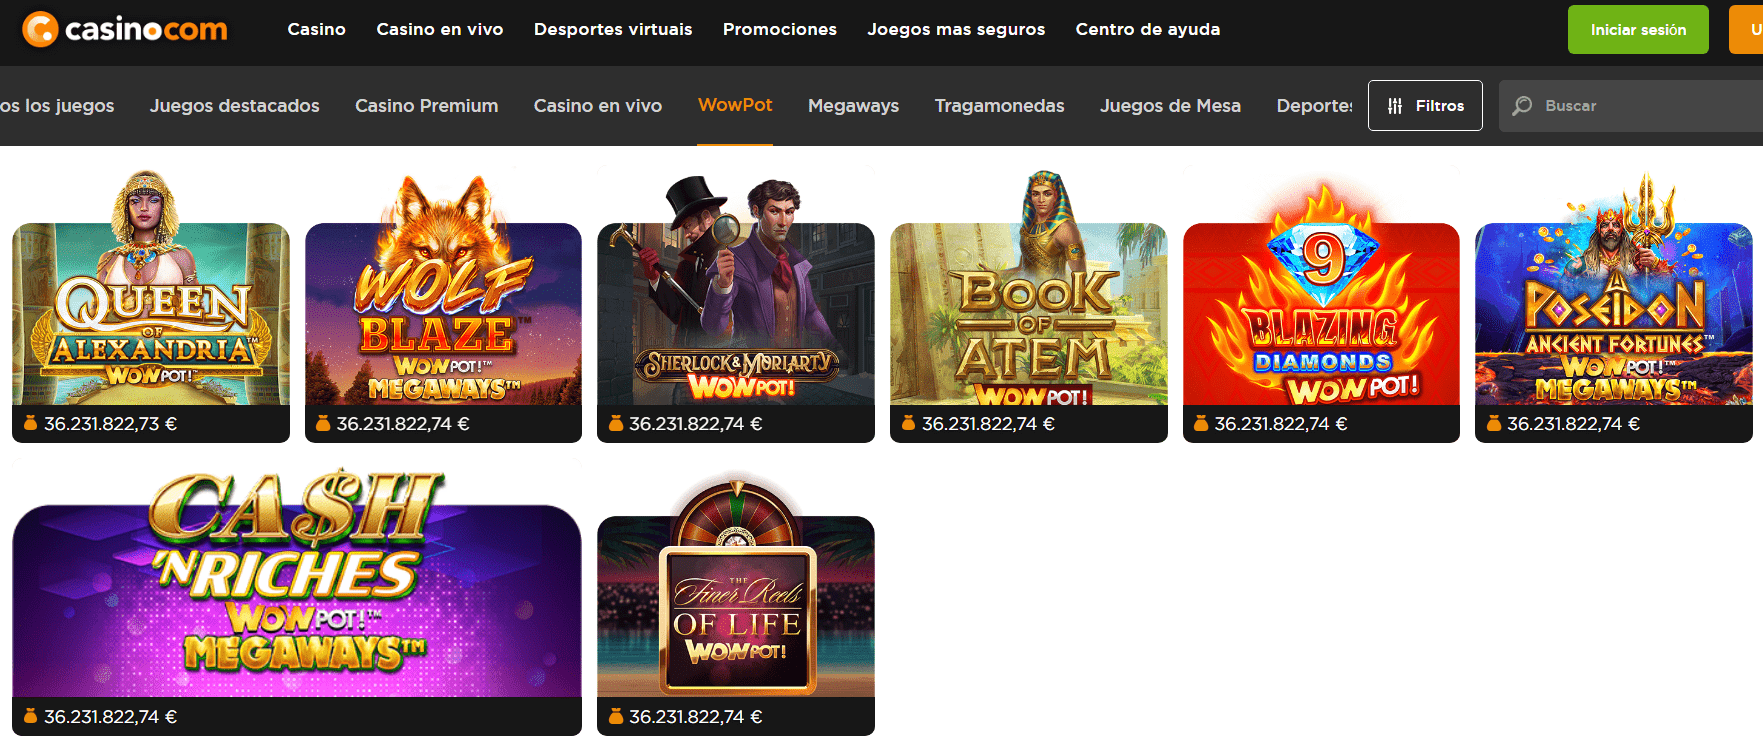 Juegos con bote progresivo de Casino.com